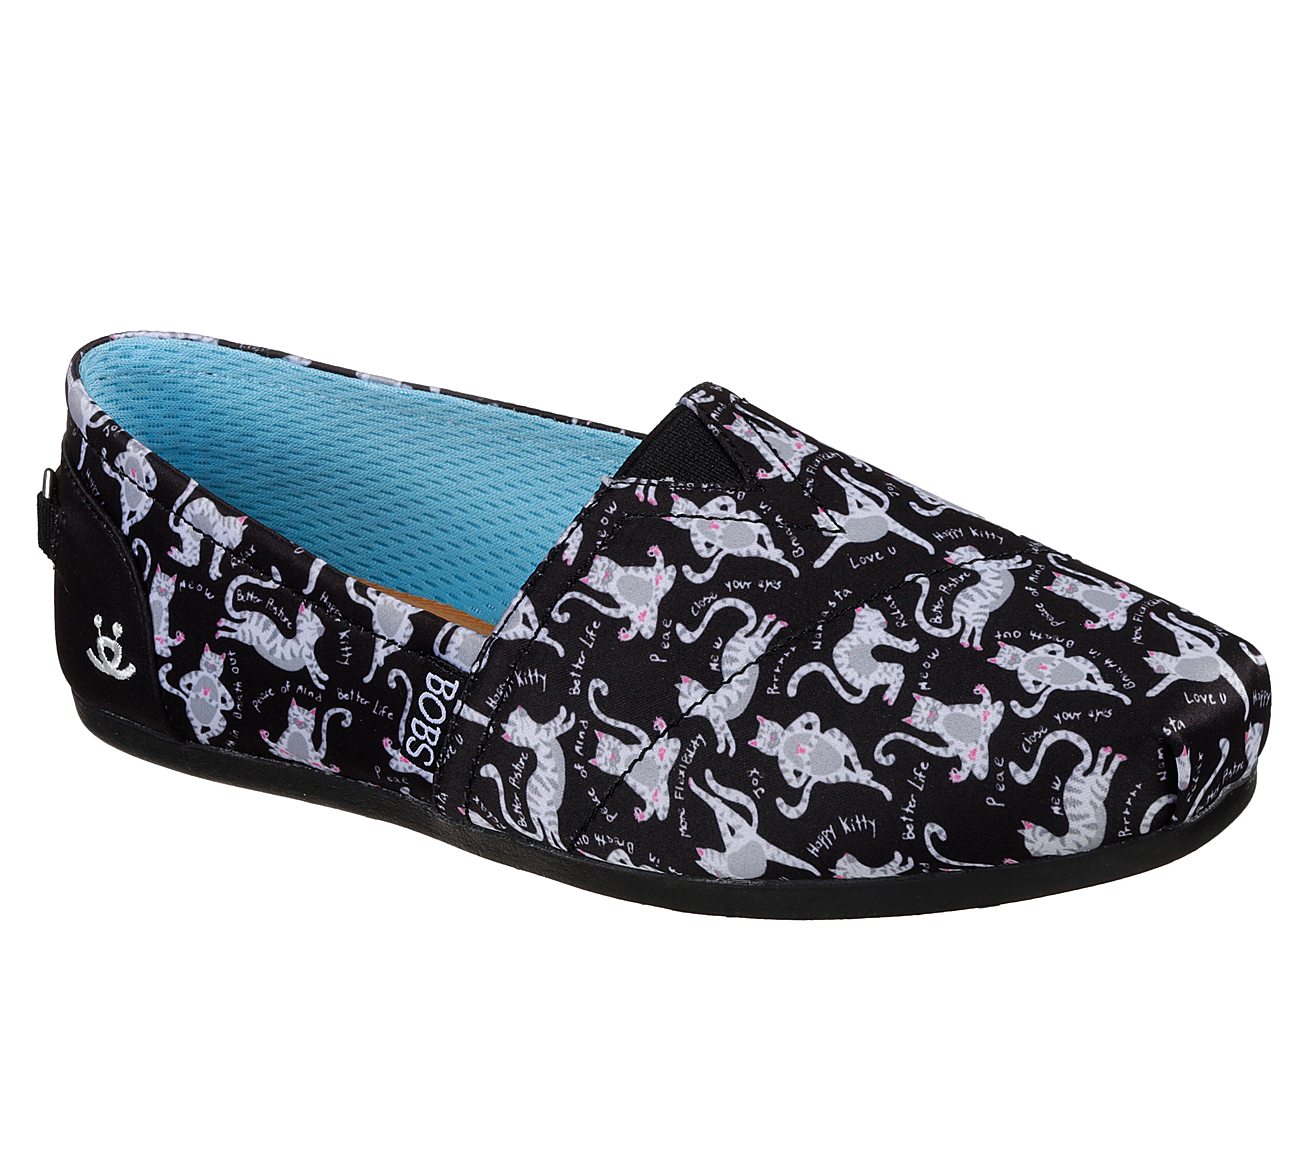 SKECHERS BOBS Plush - Zen Kitty BOBS Shoes